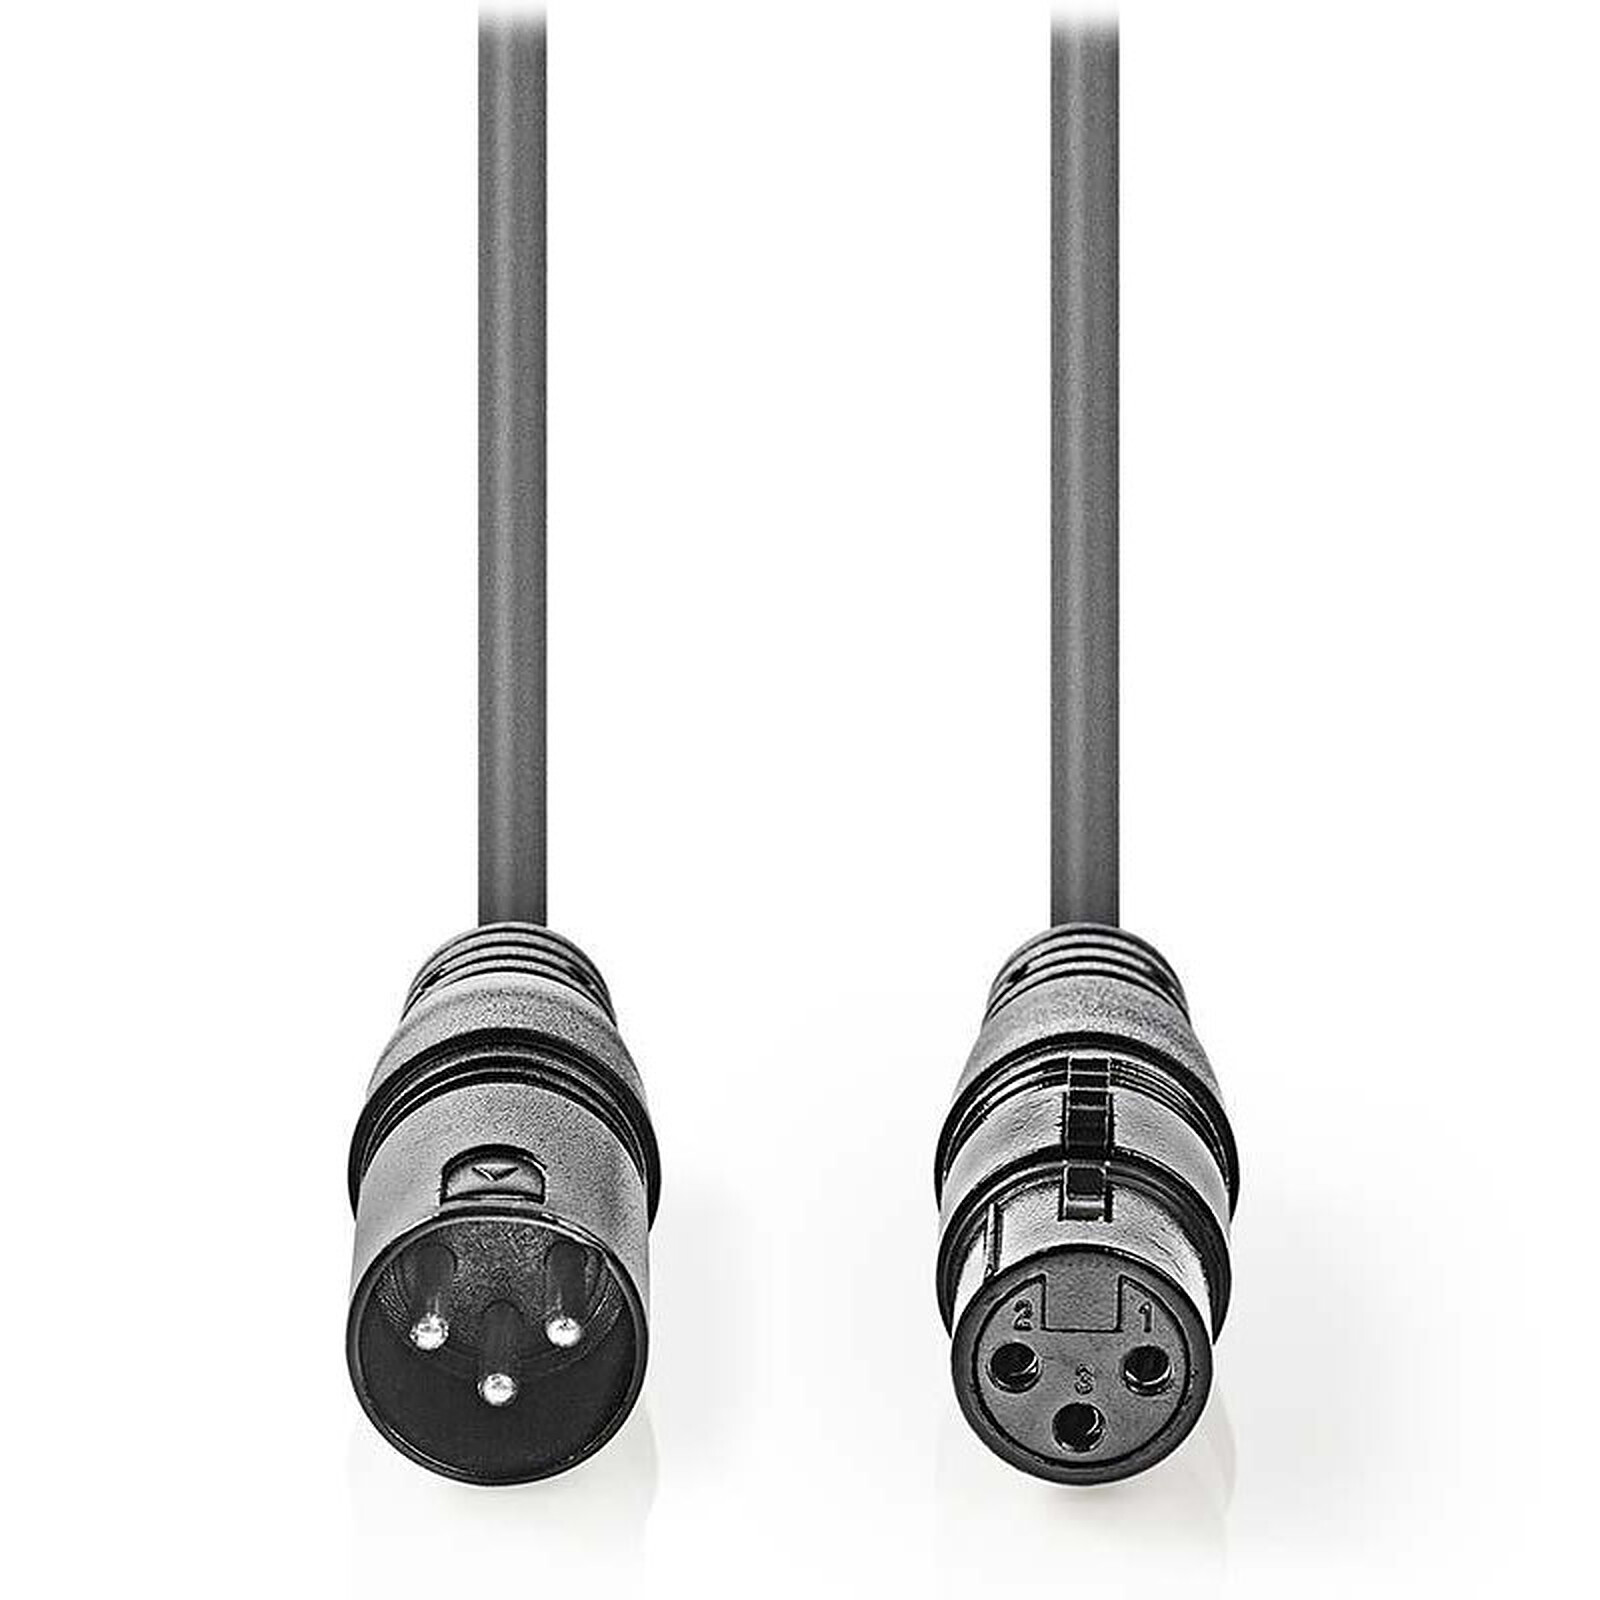 Câble microphone Jack 6.35 mm / XLR 3P femelle (6 m) - Câble audio  numérique - Garantie 3 ans LDLC